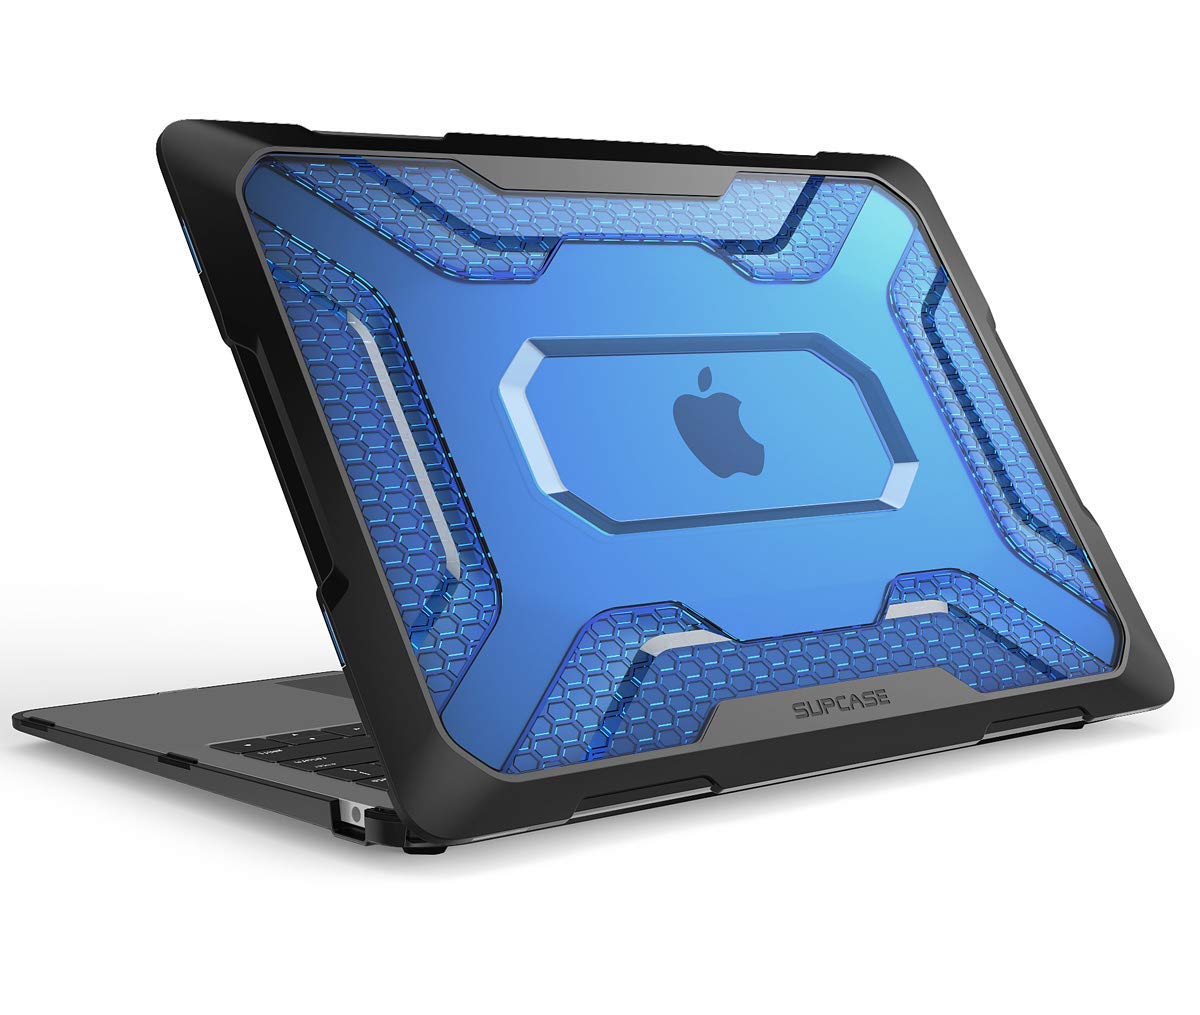 Funda para la MacBook de la 2018 Air A1932 de 13 pulgadas con Touch ID y pantalla de retina